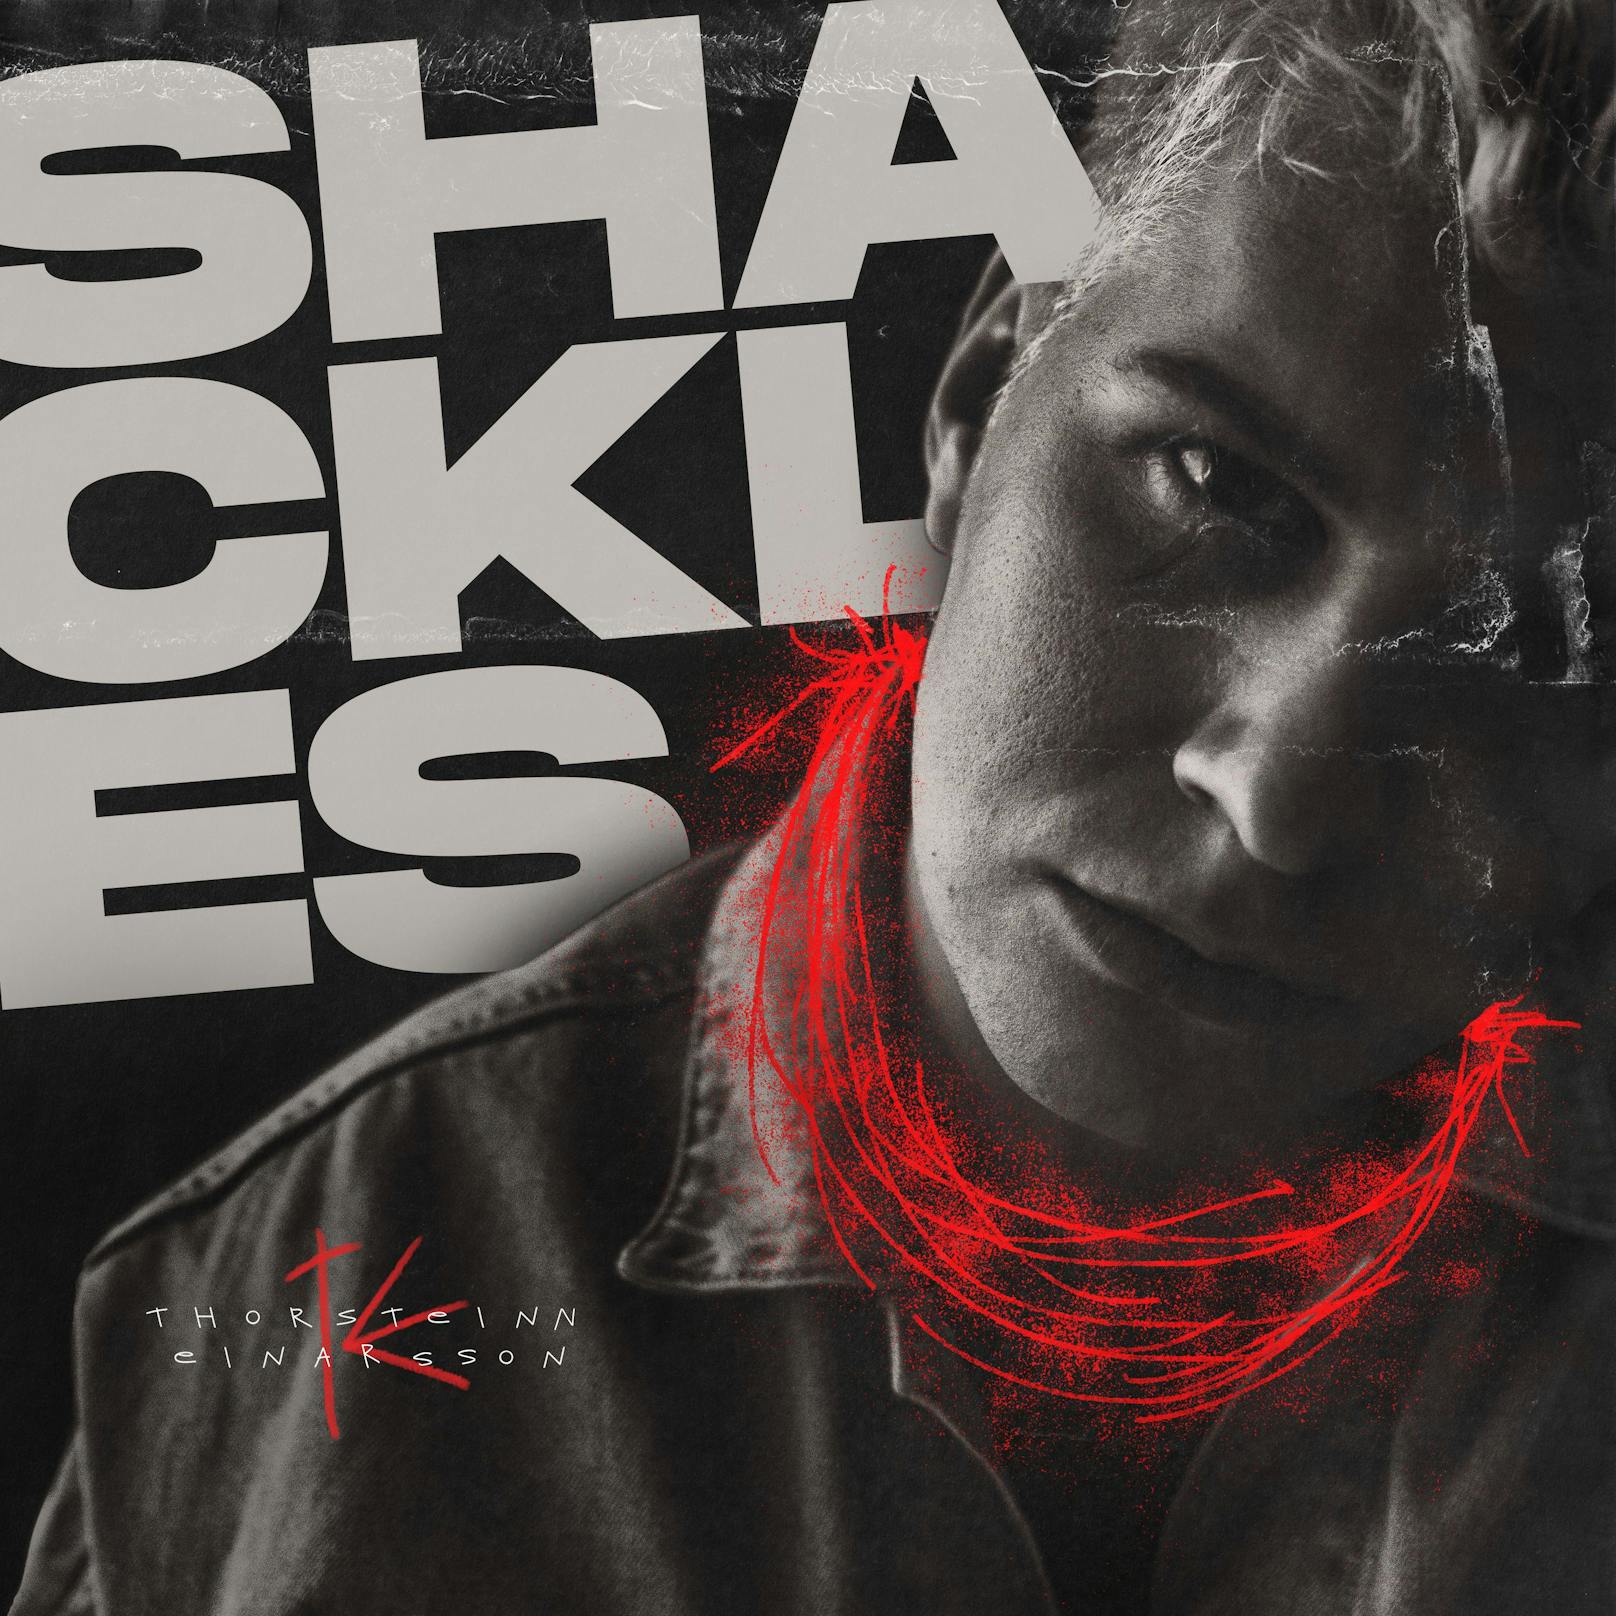 Thorsteinn Einarsson Cover von seiner neuen Single "Shackles"